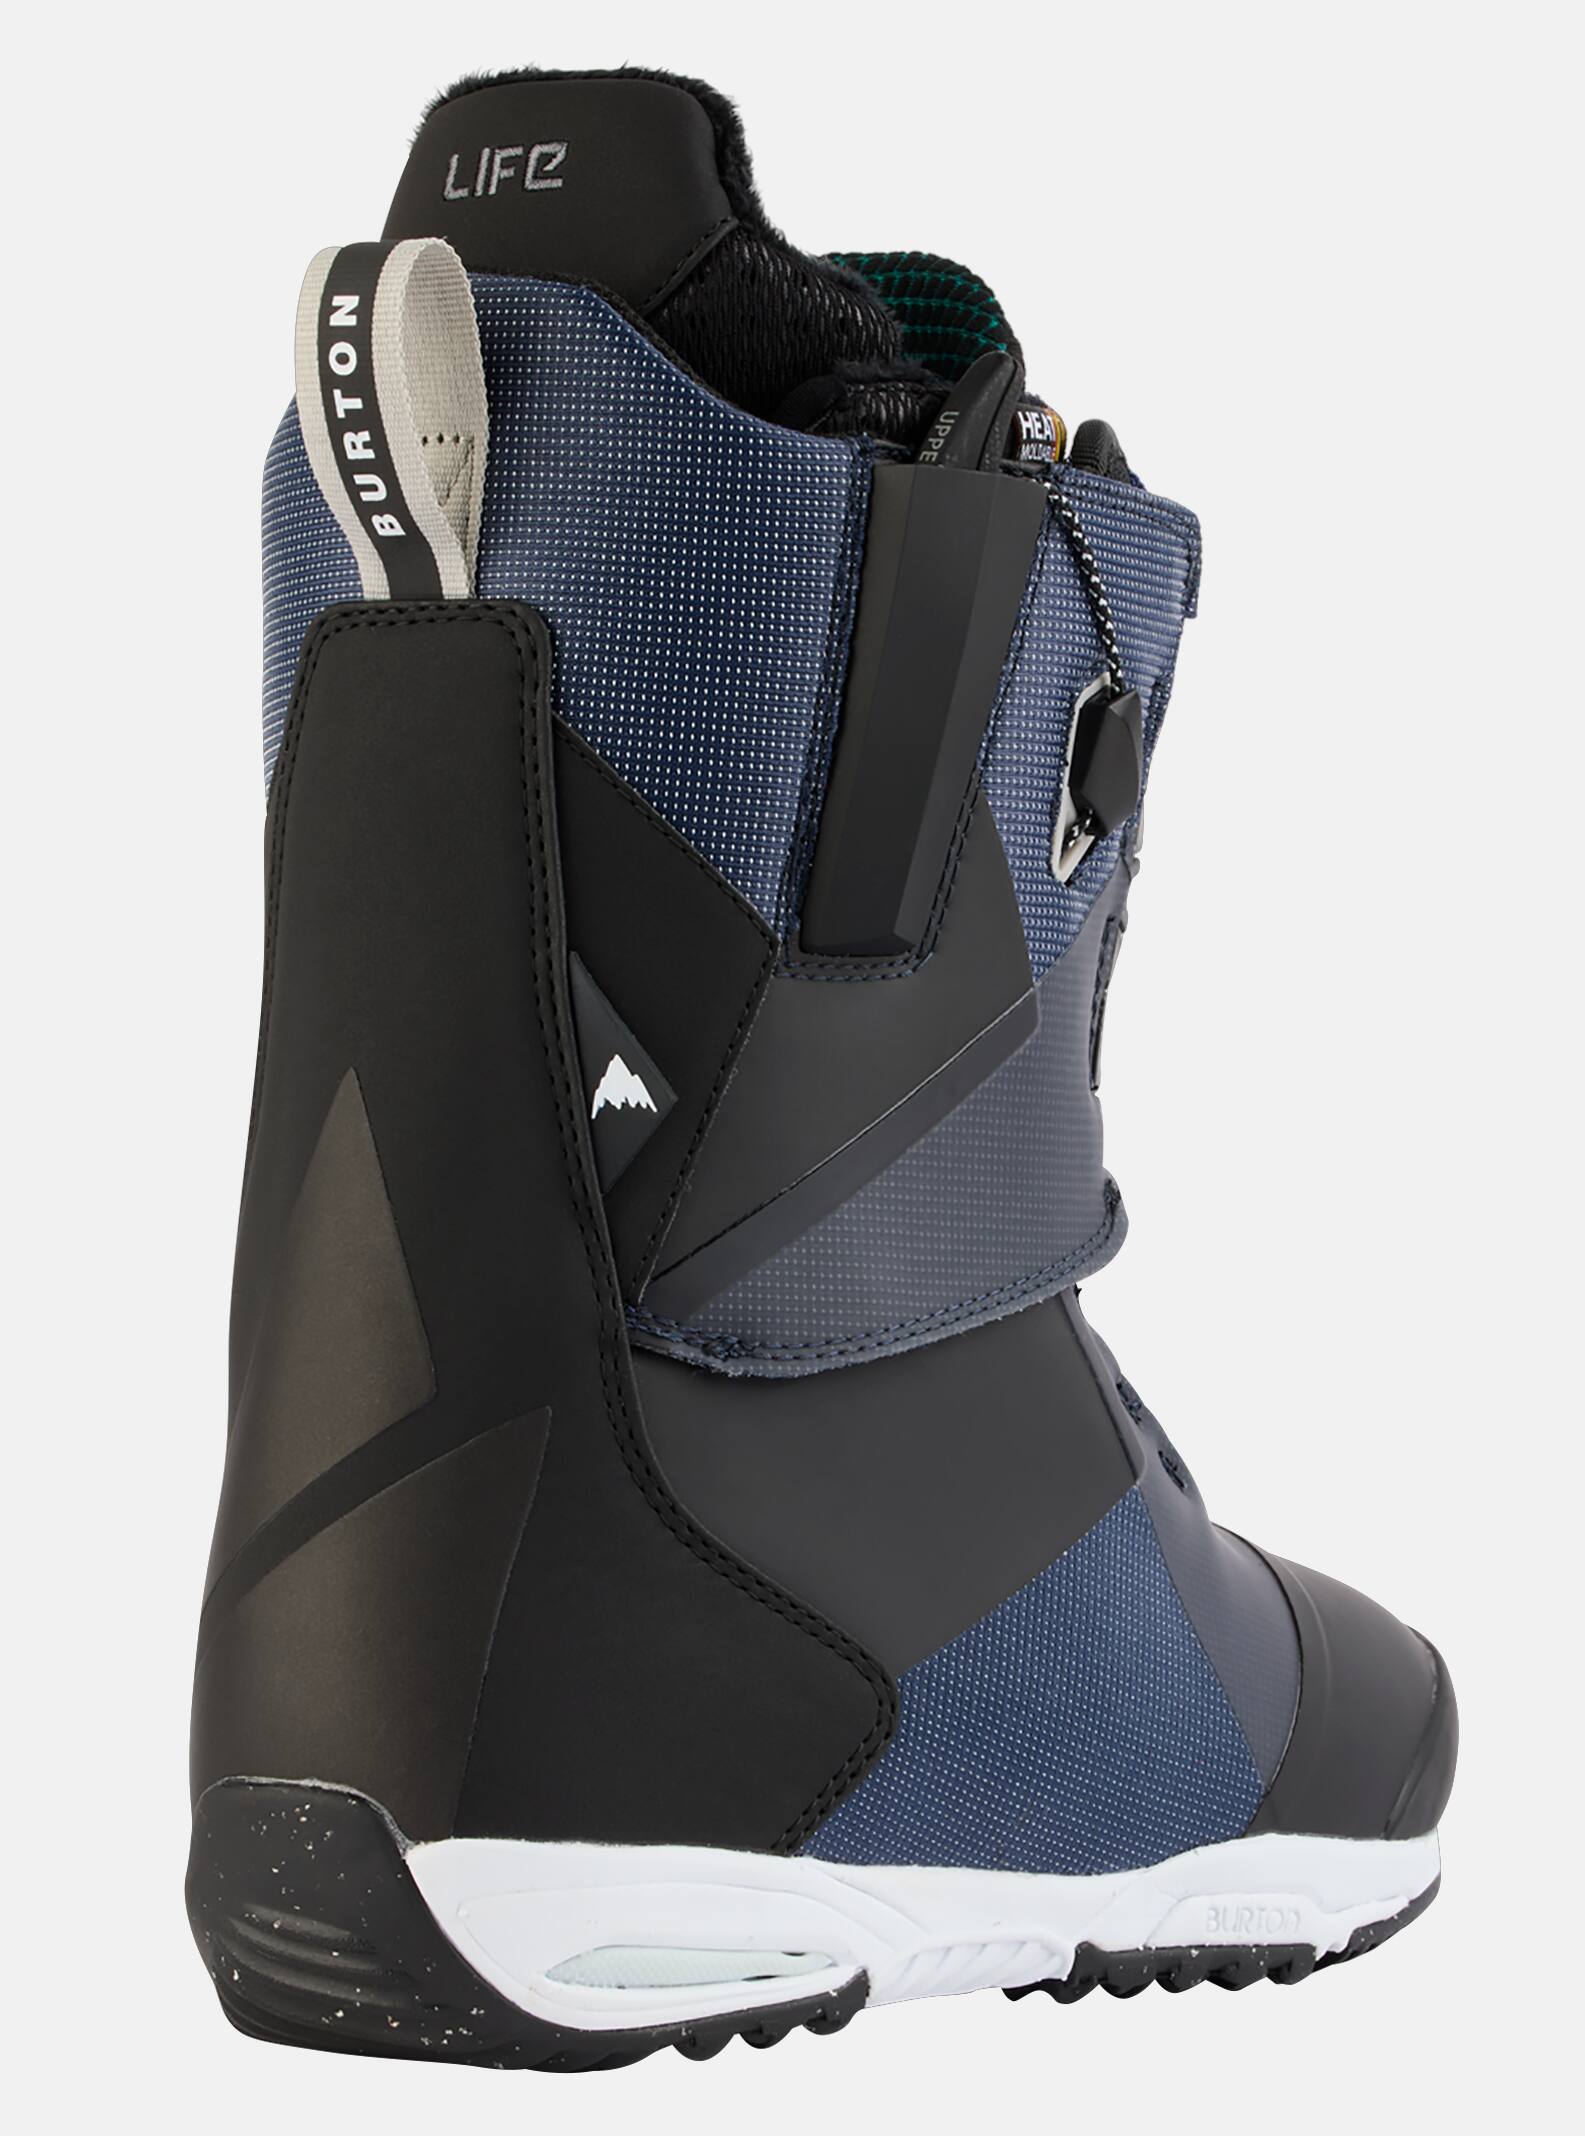 Evol Love Snowboard Boots Womens Sz 9.5 Grey 並行輸入品